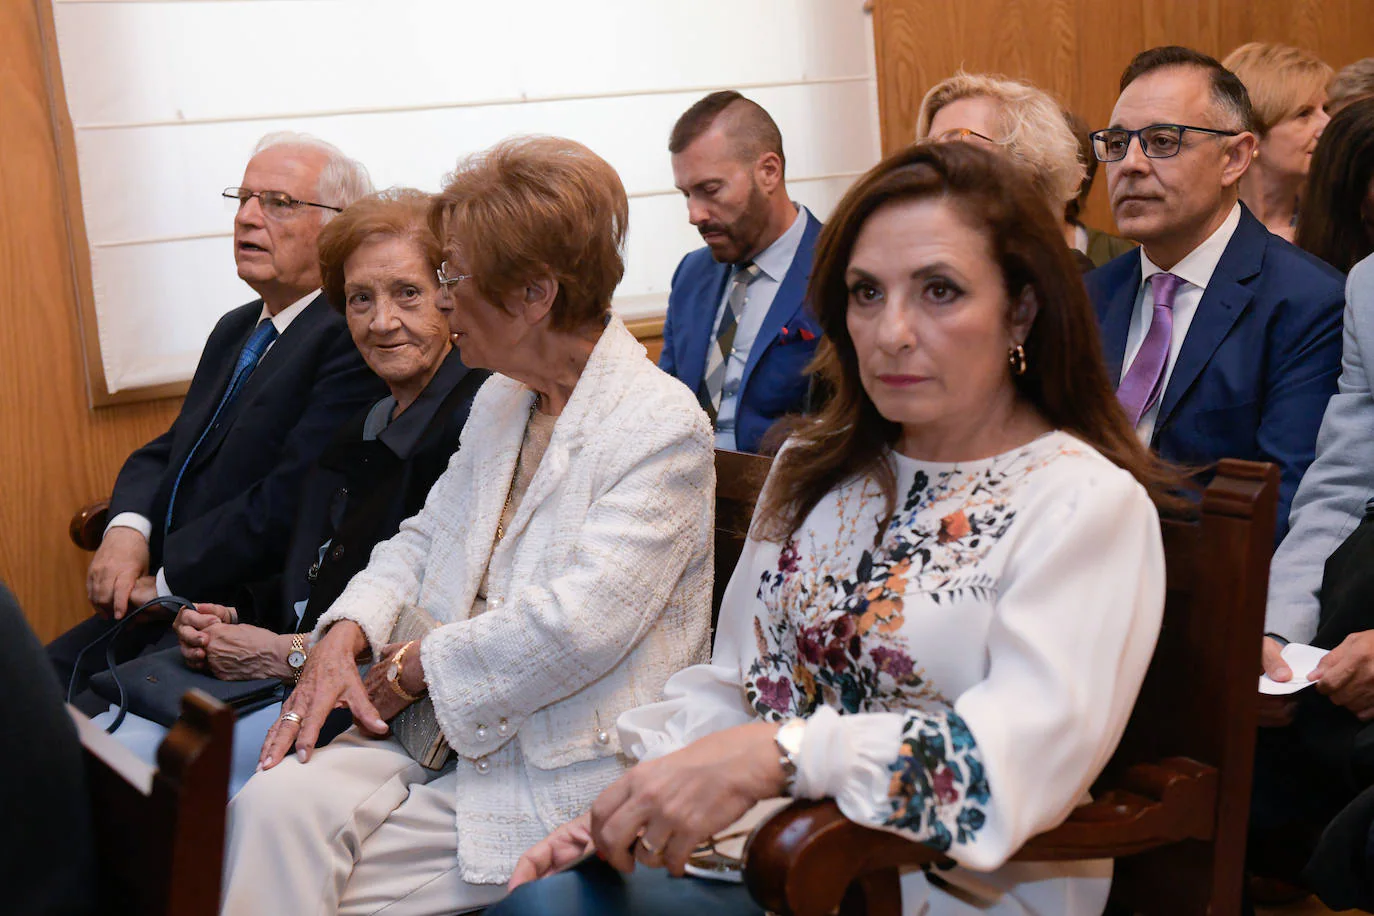 El nuevo presidente de la Audiencia Provincial de Valladolid, Javier Carranza, ha tomado posesión de su cargo este viernes mediante el juramento ante la Sala de Gobierno del Tribunal Superior de Justicia de Castilla y León